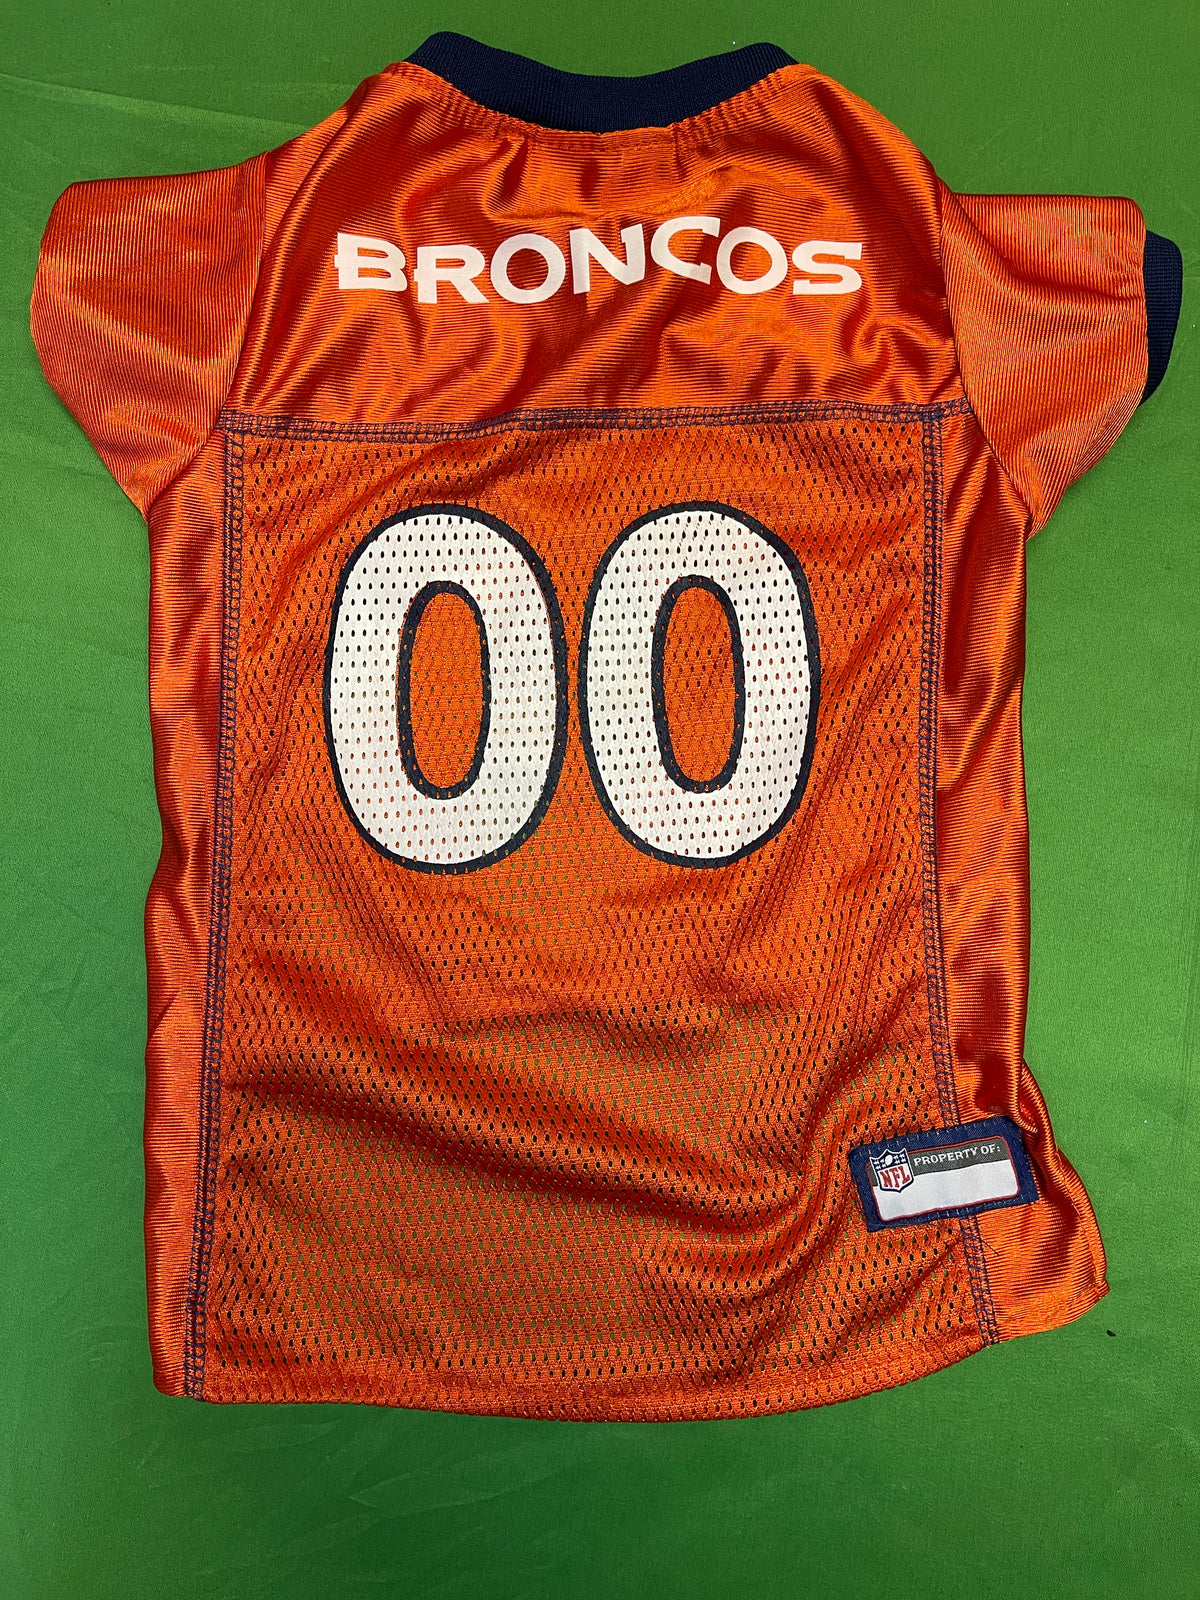 NFL Denver Broncos #00 Orange Dog Jersey Large